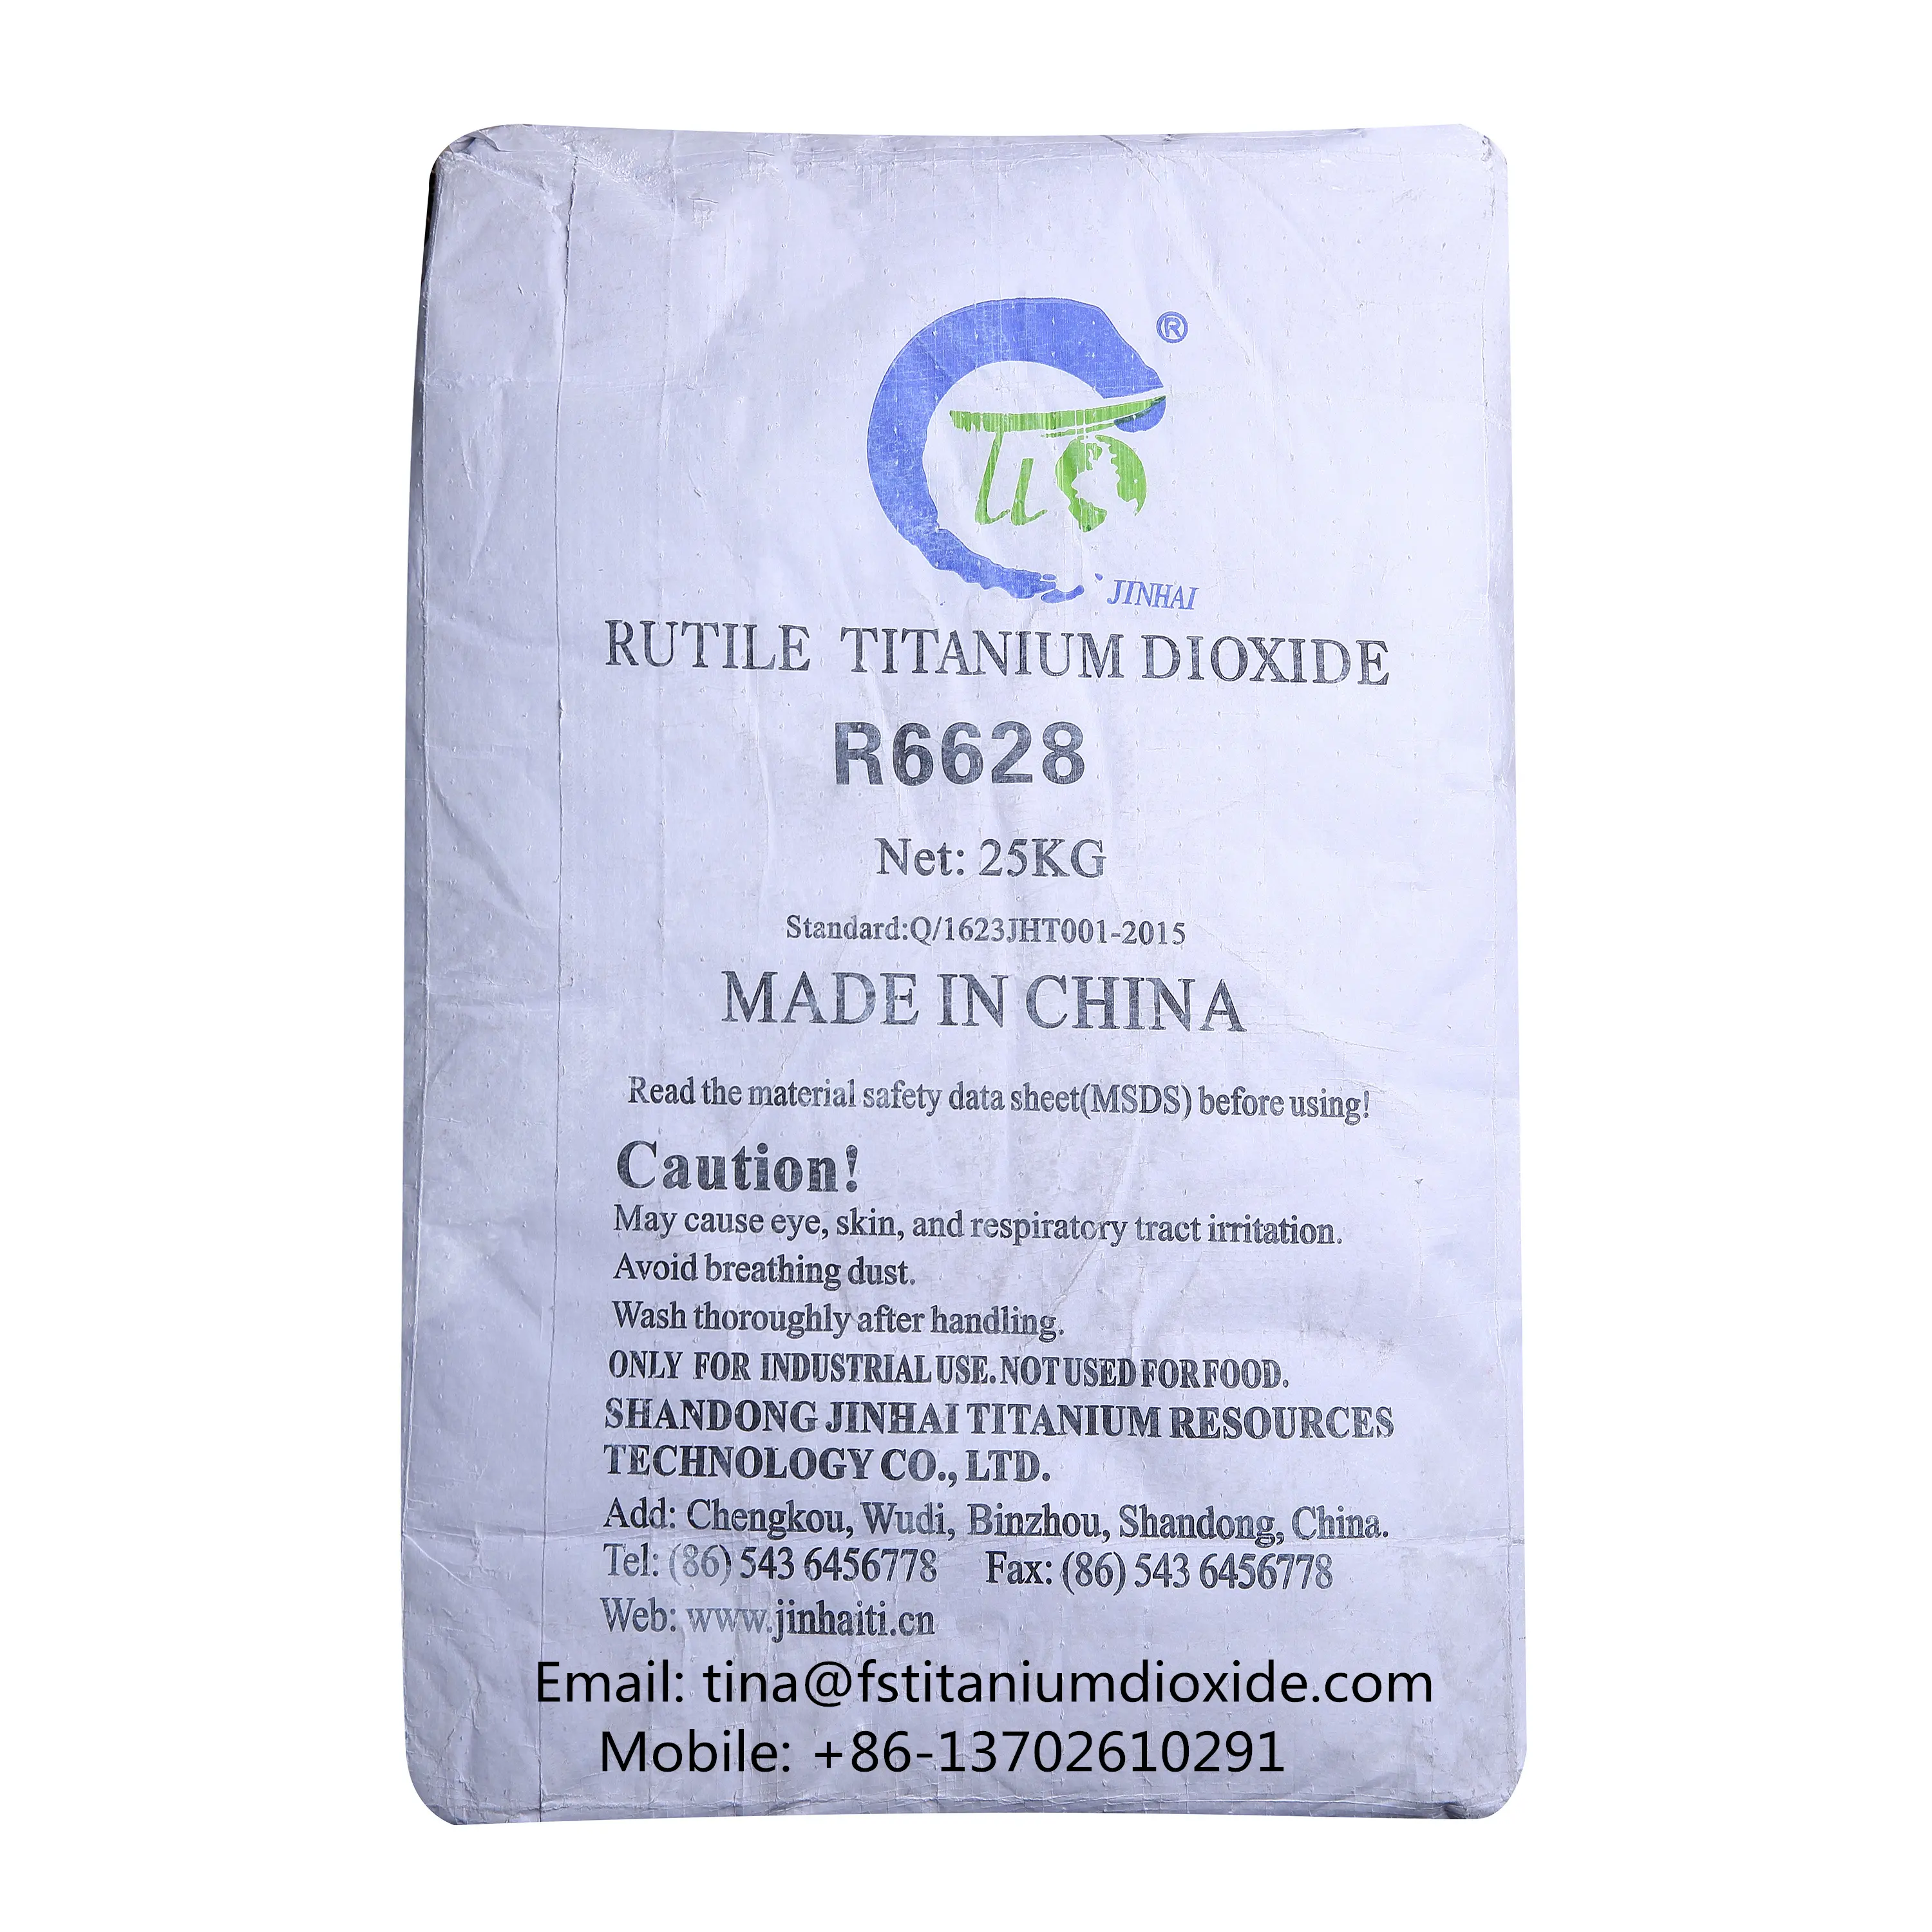 R-6628 per la verniciatura a polvere prezzo biossido di titanio, dove si acquista, materie prime tio2 biossido di titanio prezzo